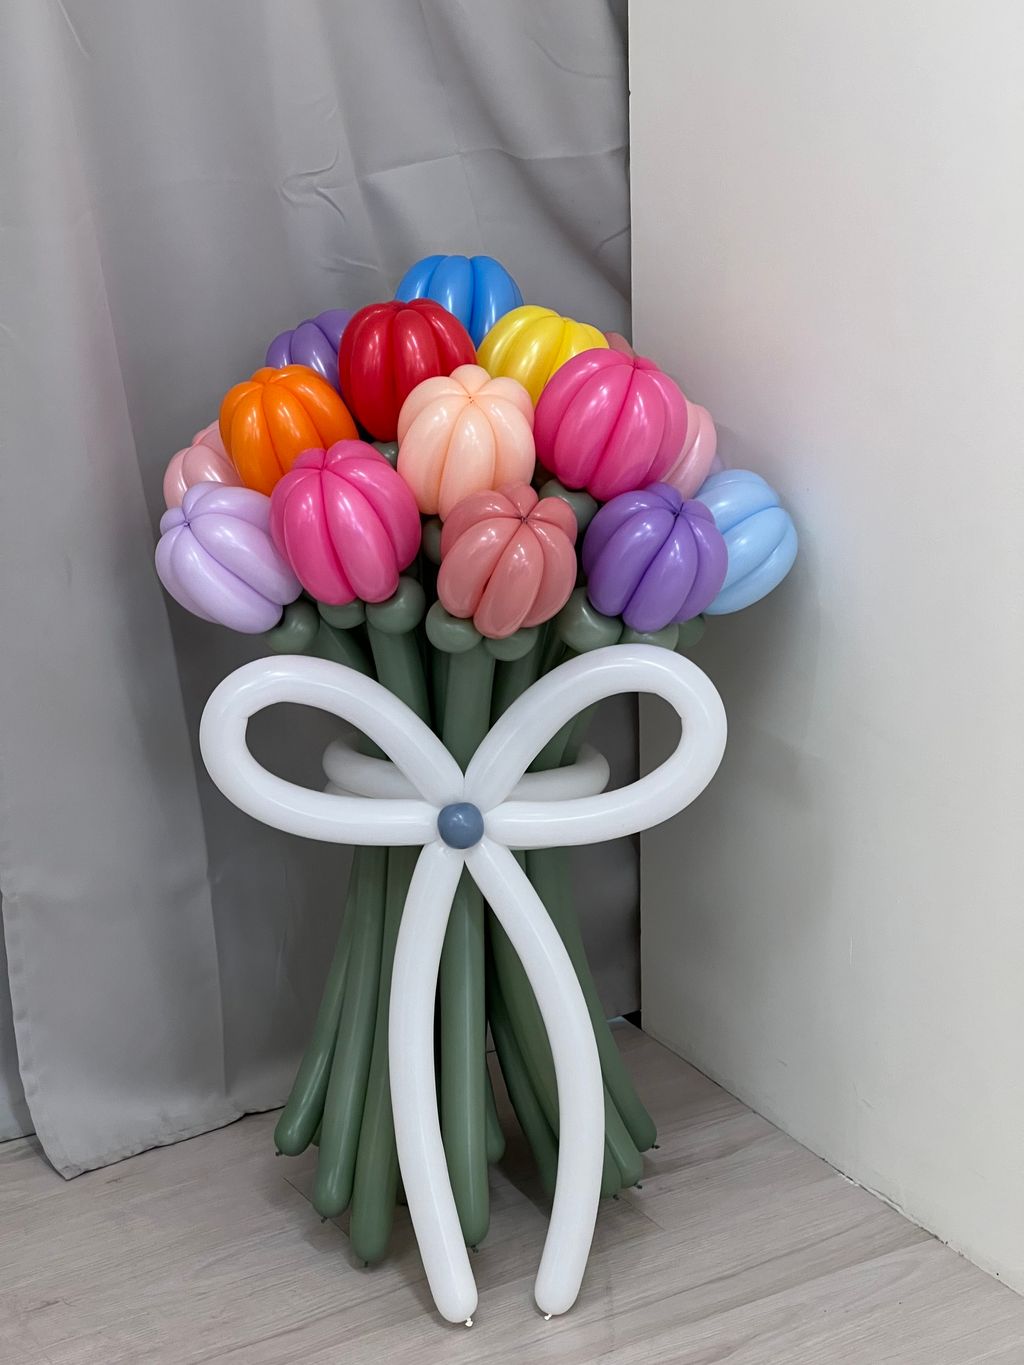 鬱金香 氣球花束 客製化 製作外送到府 台中